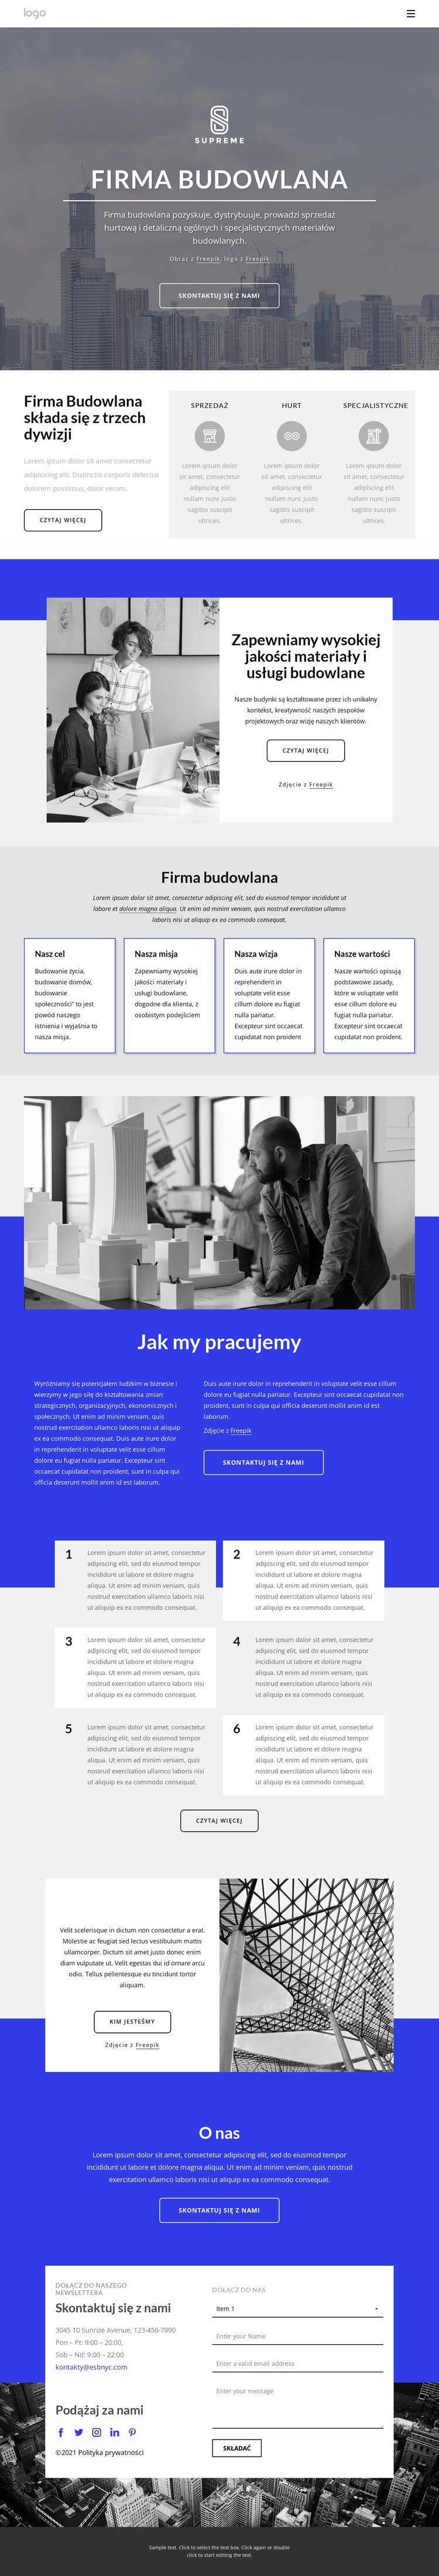 Nowa firma budowlana Makieta strony internetowej